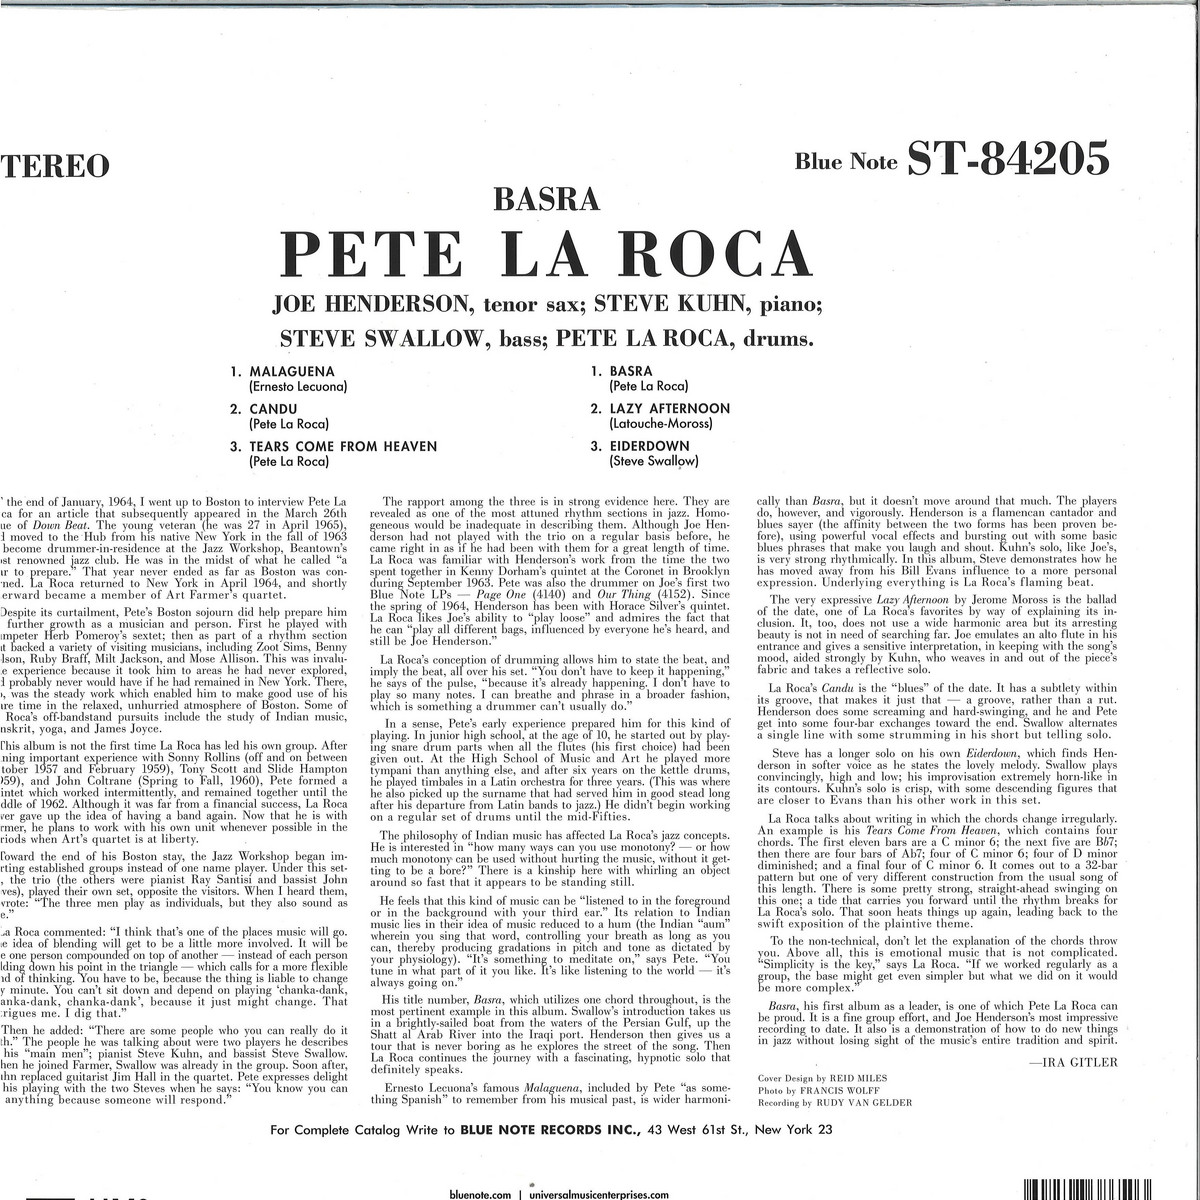 Pete La Roca - Basra / Blue Note 0838650 - Vinyl